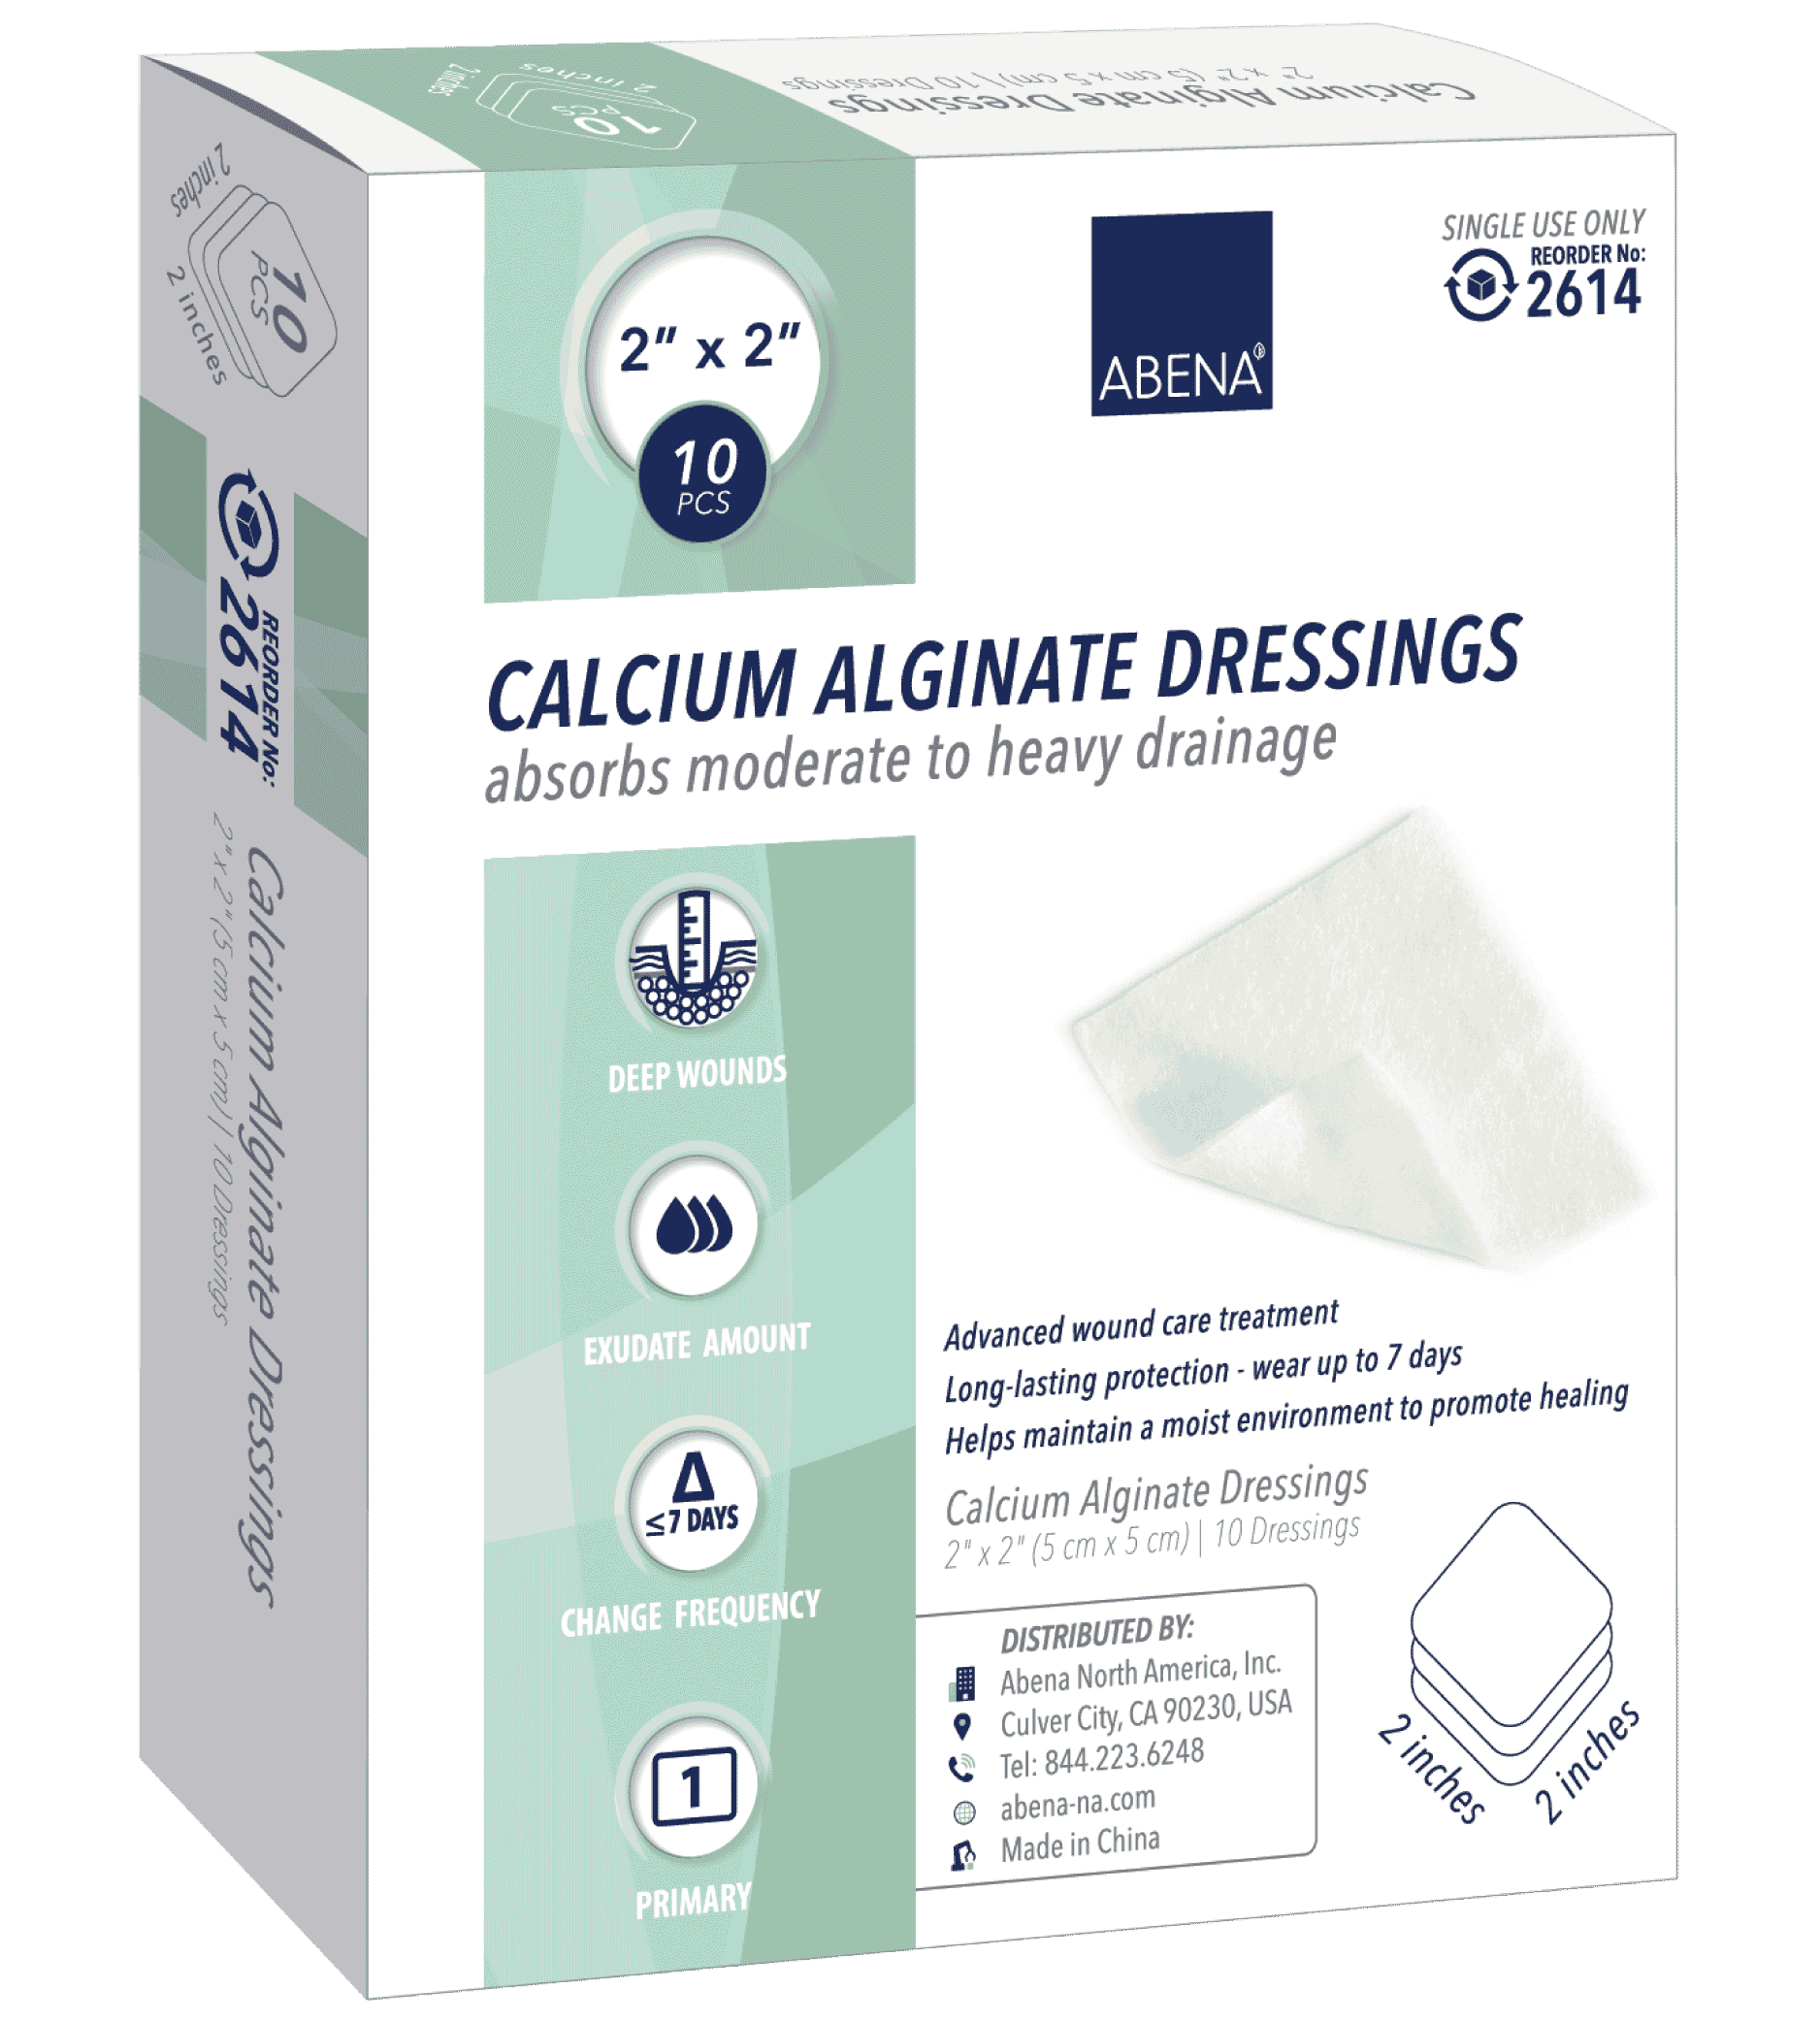 Calcium Alginate Dressings